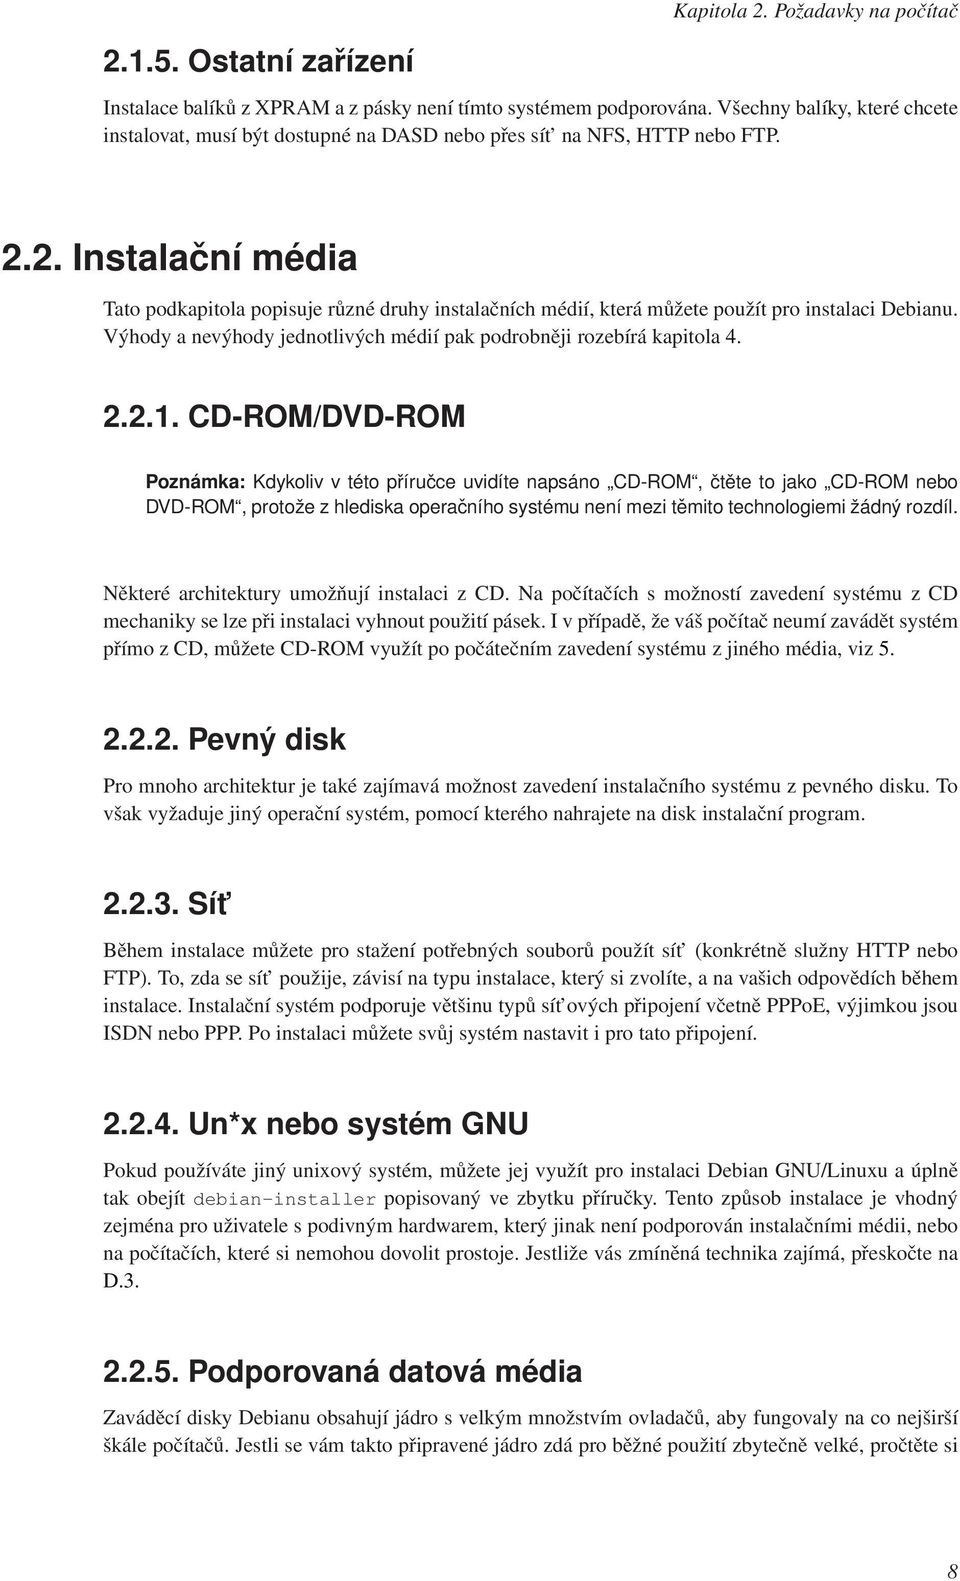 2. Instalační média Tato podkapitola popisuje různé druhy instalačních médií, která můžete použít pro instalaci Debianu. Výhody a nevýhody jednotlivých médií pak podrobněji rozebírá kapitola 4. 2.2.1.